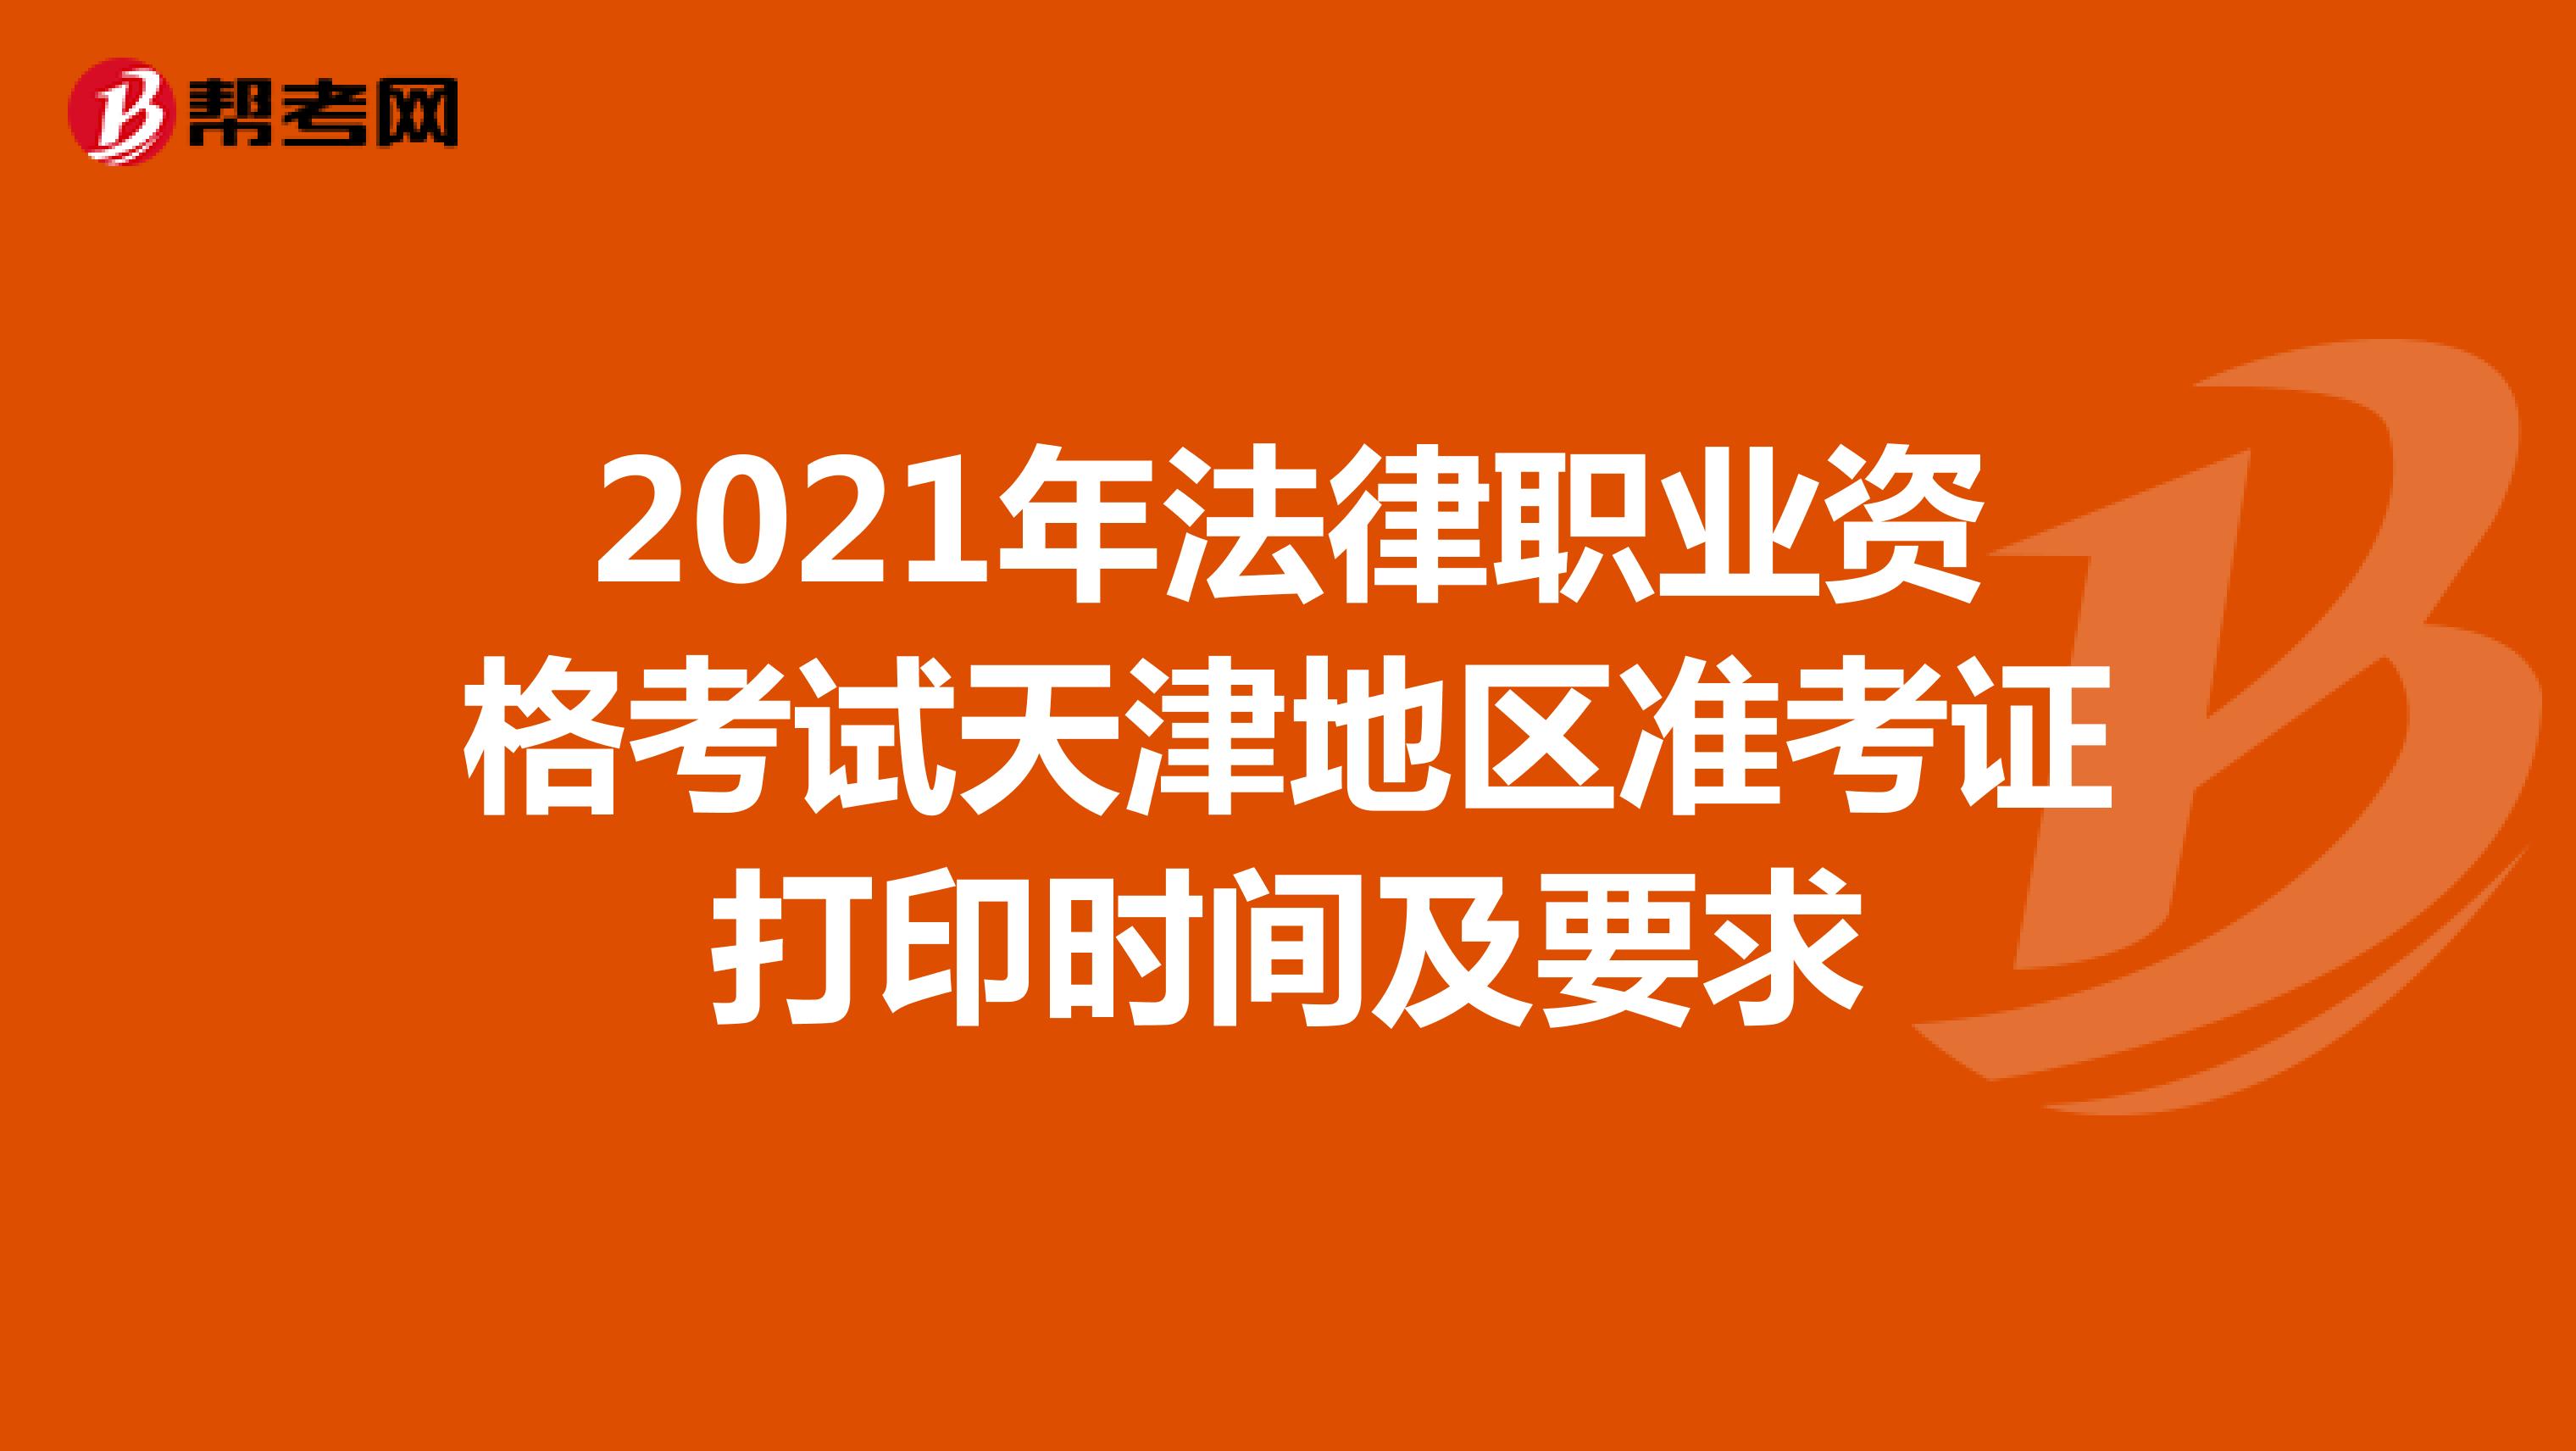 2021年法律职业资格考试天津地区准考证打印时间及要求